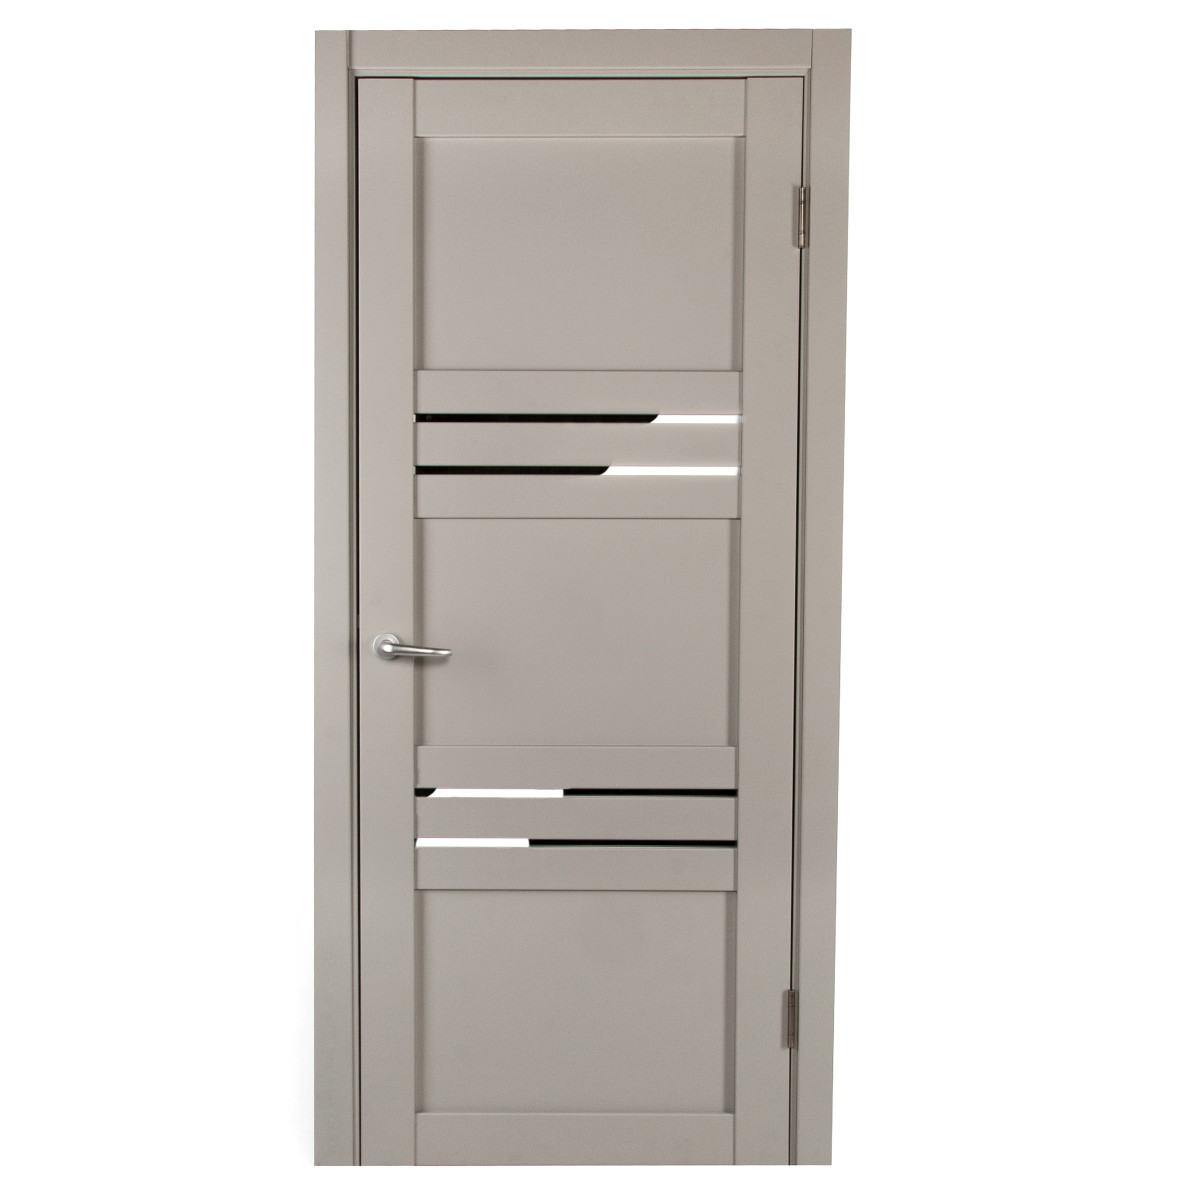 Дверь межкомнатная с фурнитурой Астерия 60х200 см, Hardflex, цвет серый жемчуг